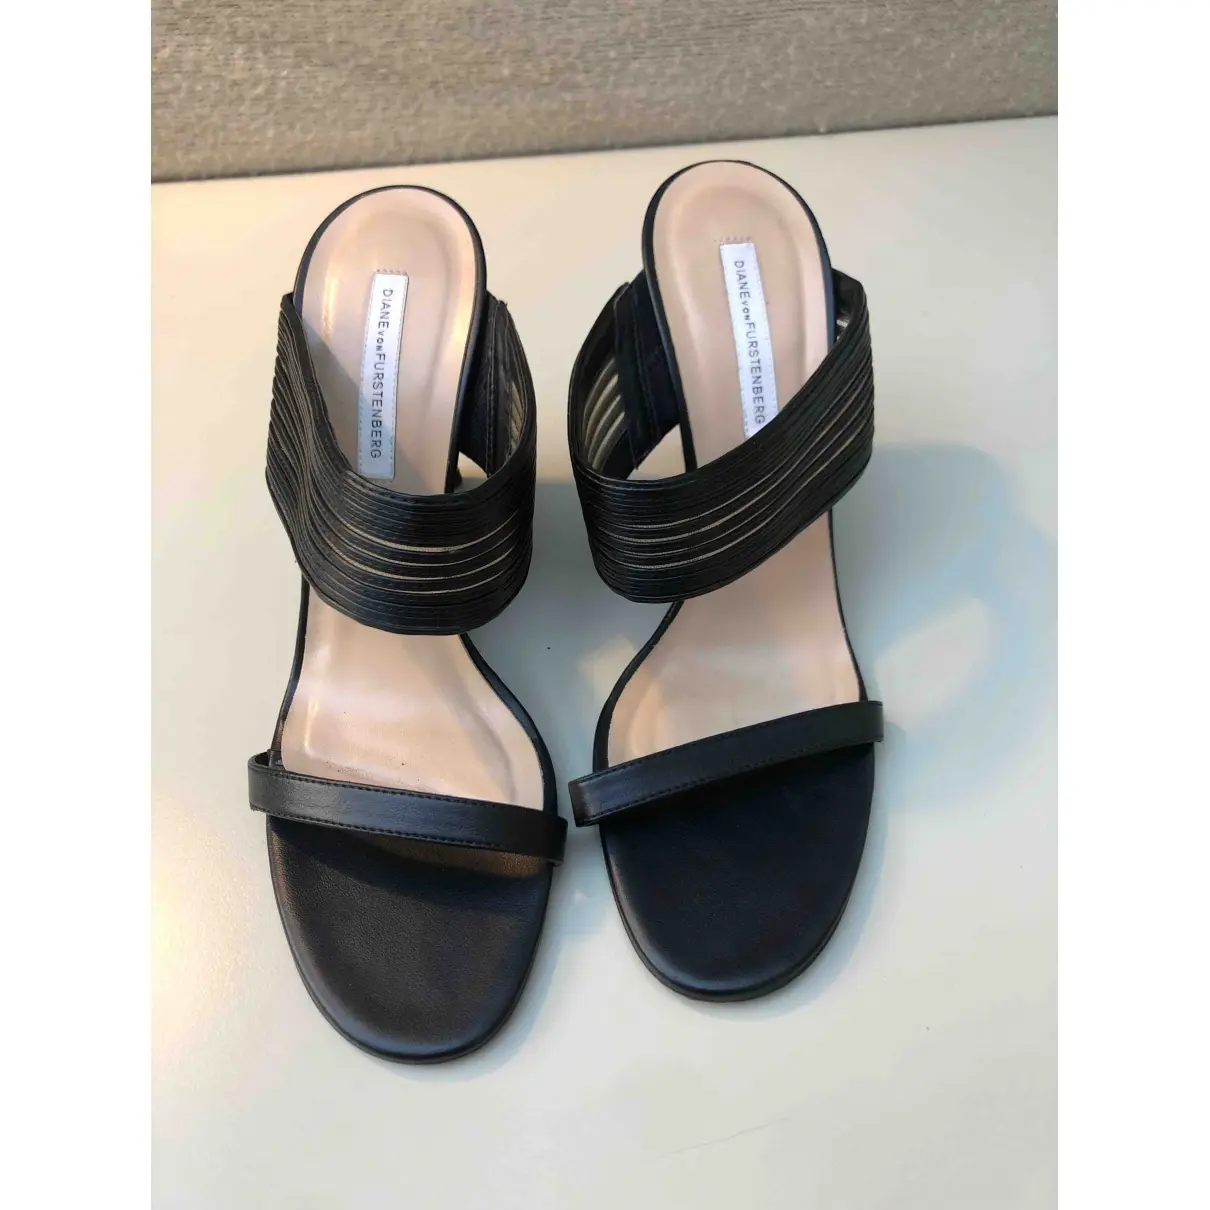 Diane Von Furstenberg Patent leather heels for sale